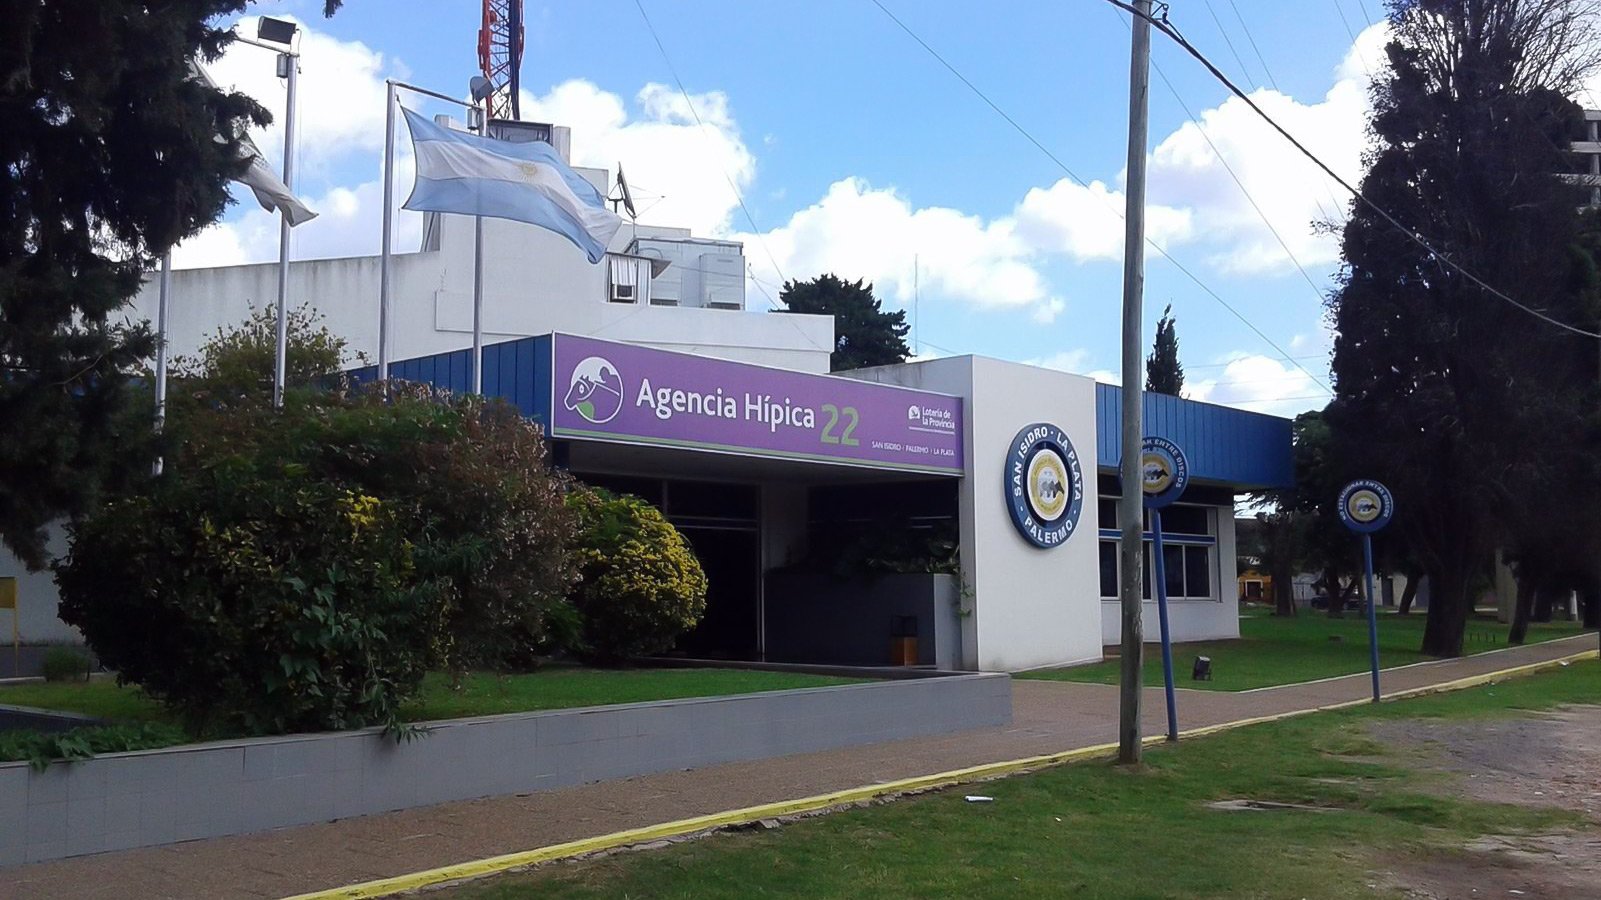 Las agencias hípicas solicitaron al IPLyC de Buenos Aires ampliar sus  servicios y ofrecer juegos online | Yogonet Latinoamérica